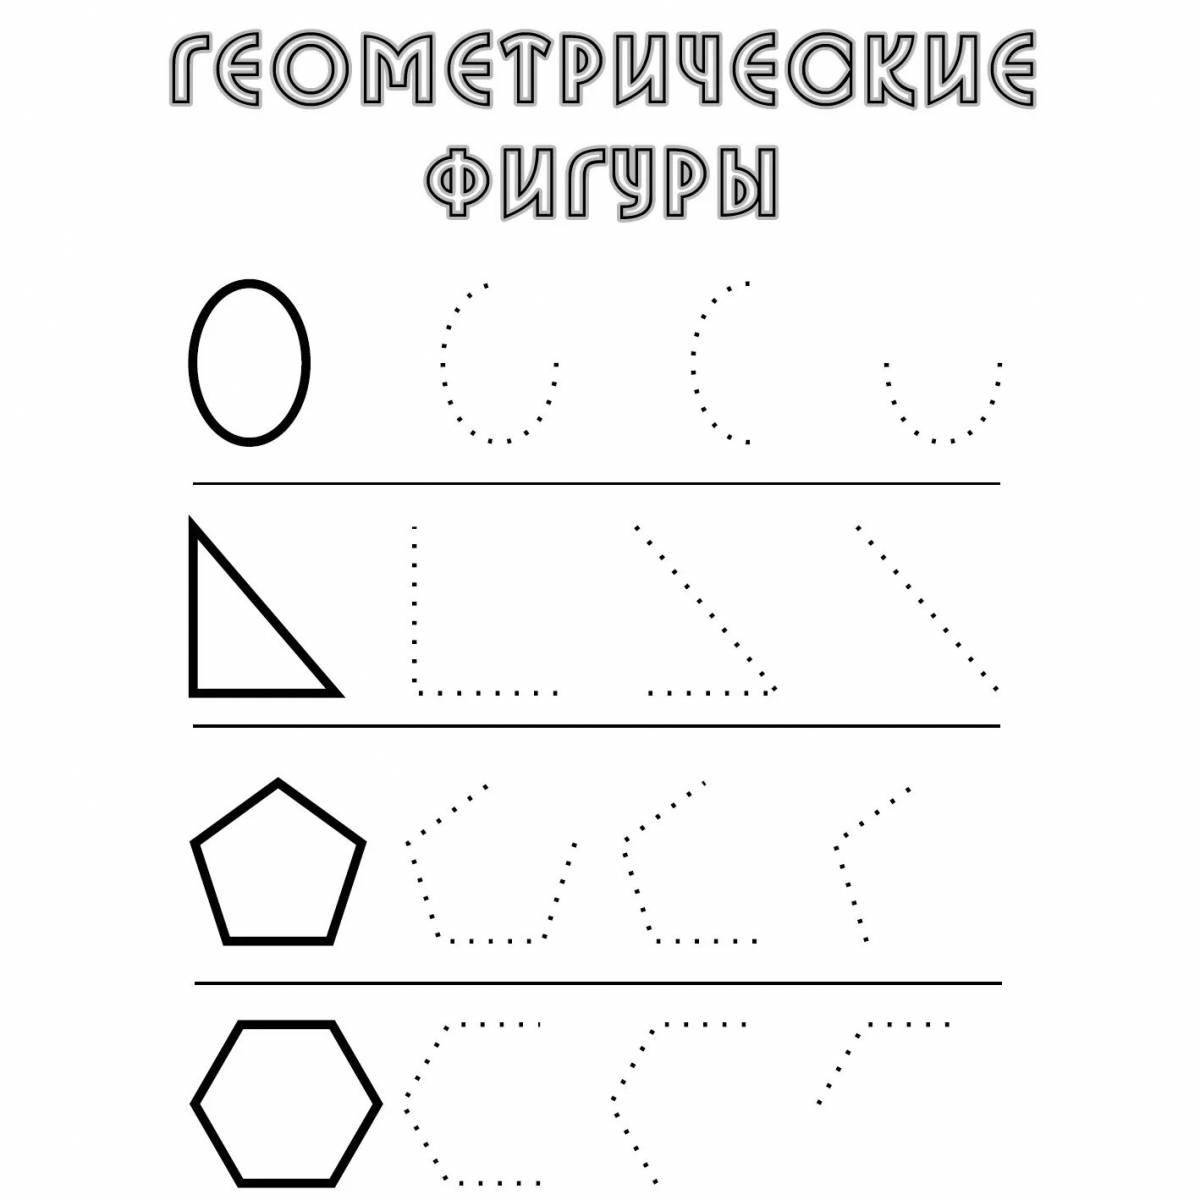 Увлекательная геометрическая раскраска для дошкольников